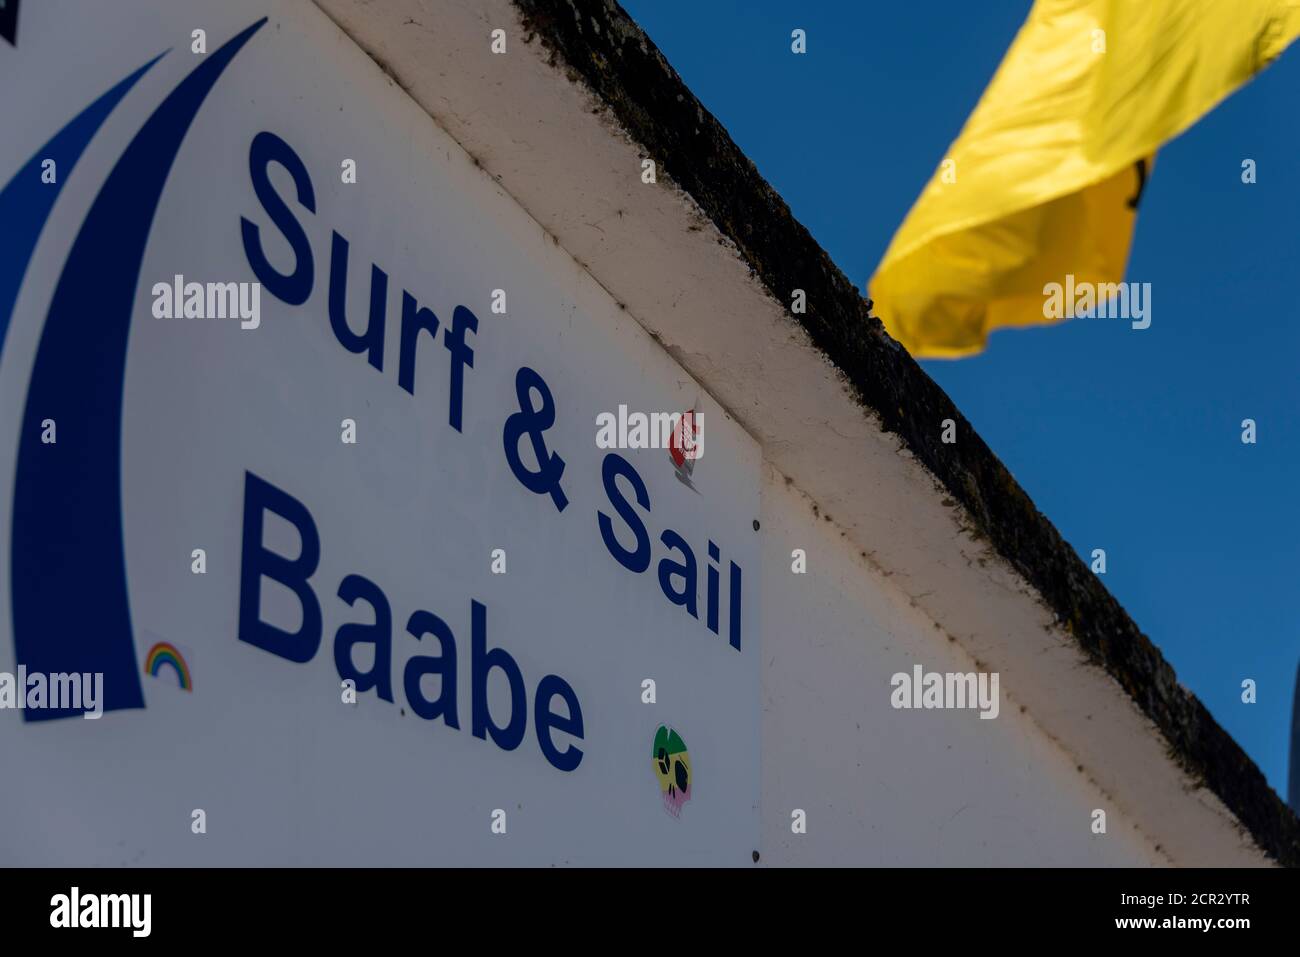 Deutschland, Mecklenburg-Vorpommern, Insel Rügen, Baabe, Schriftzug Surf & Sail, Surfschule, Segelschule Stockfoto